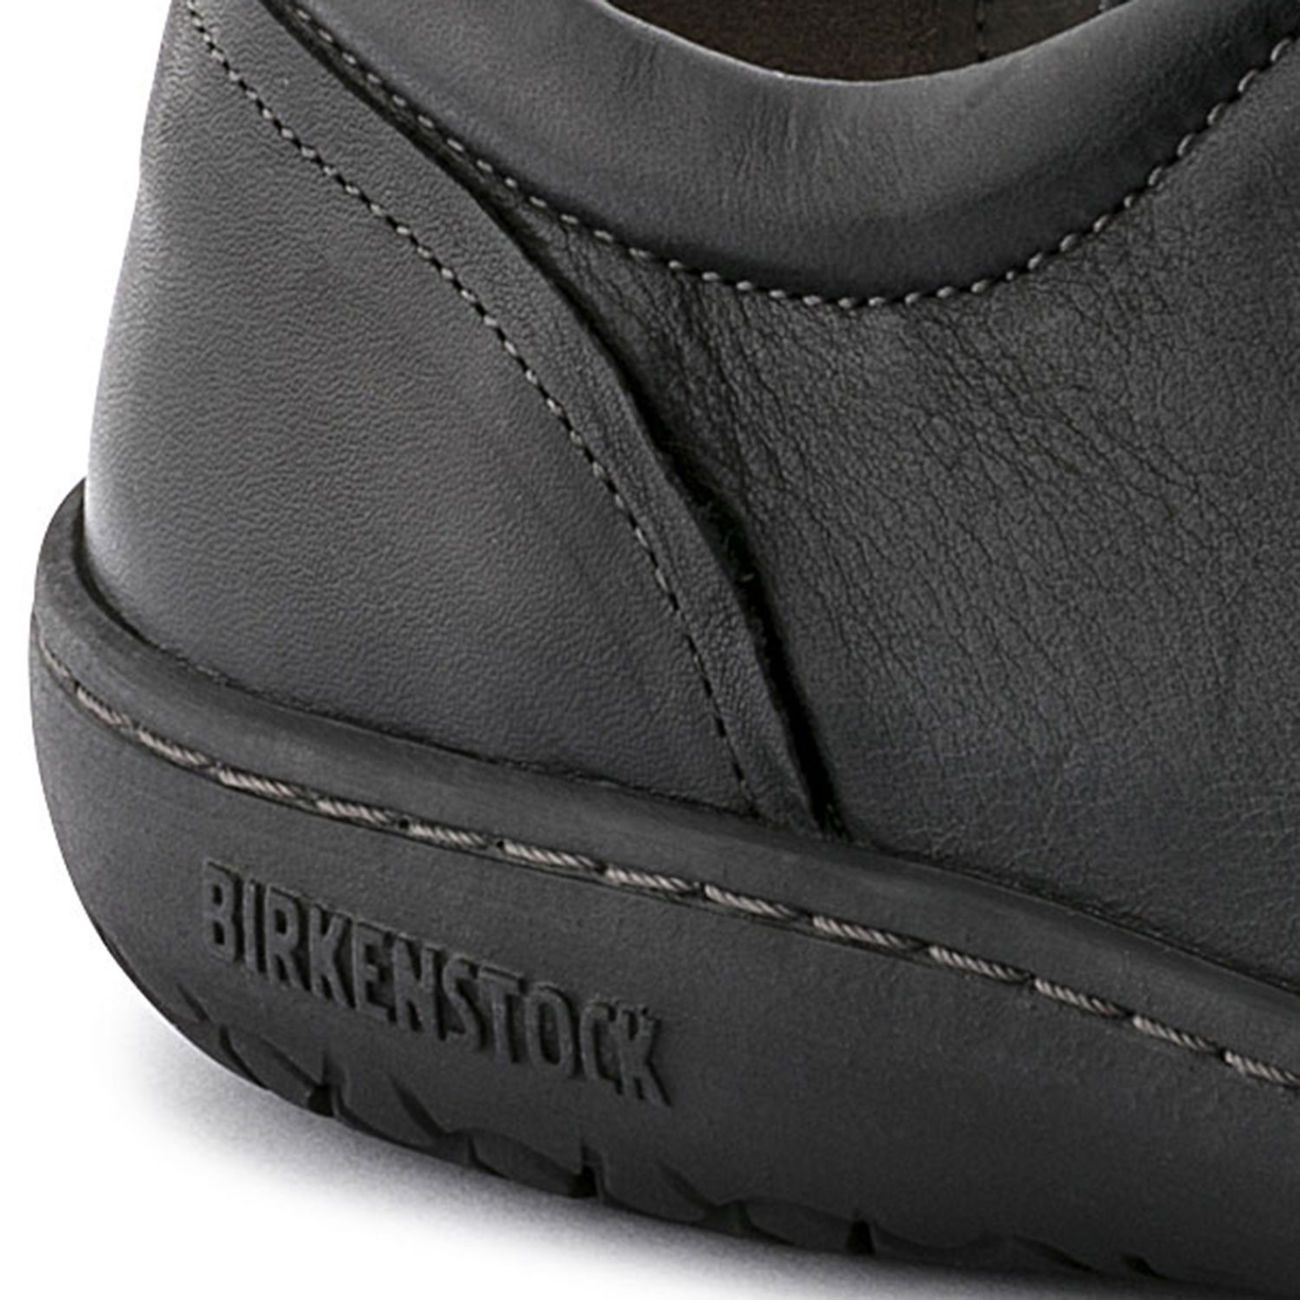 birkenstock walking shoes